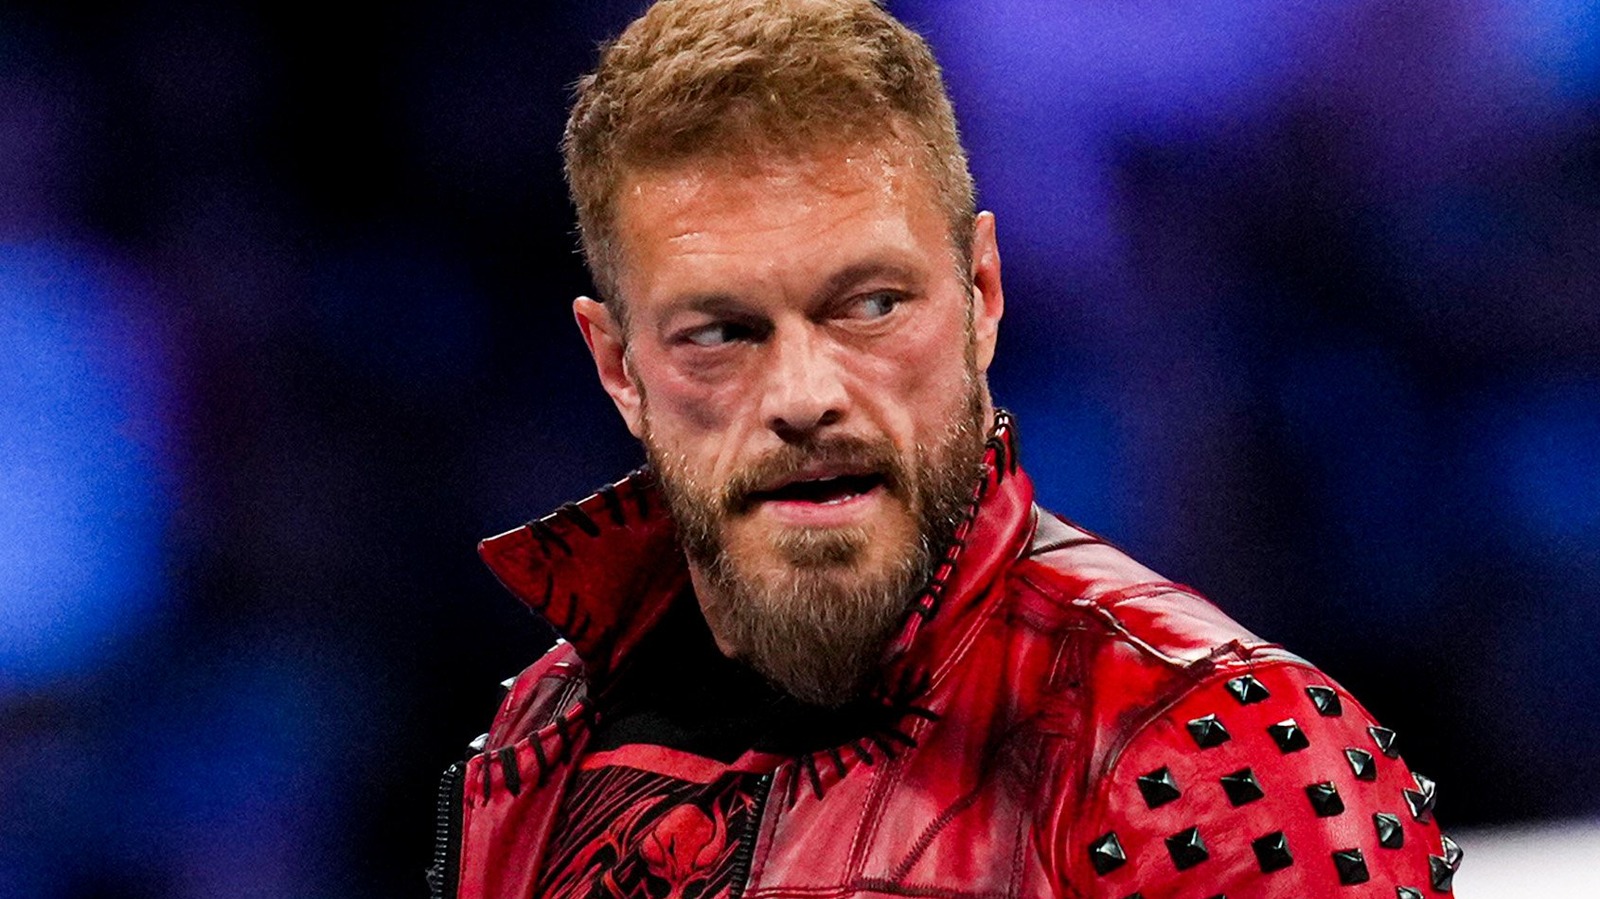 Edge's Return, combate por el título de EE. UU. promocionado para WWE SmackDown del próximo viernes